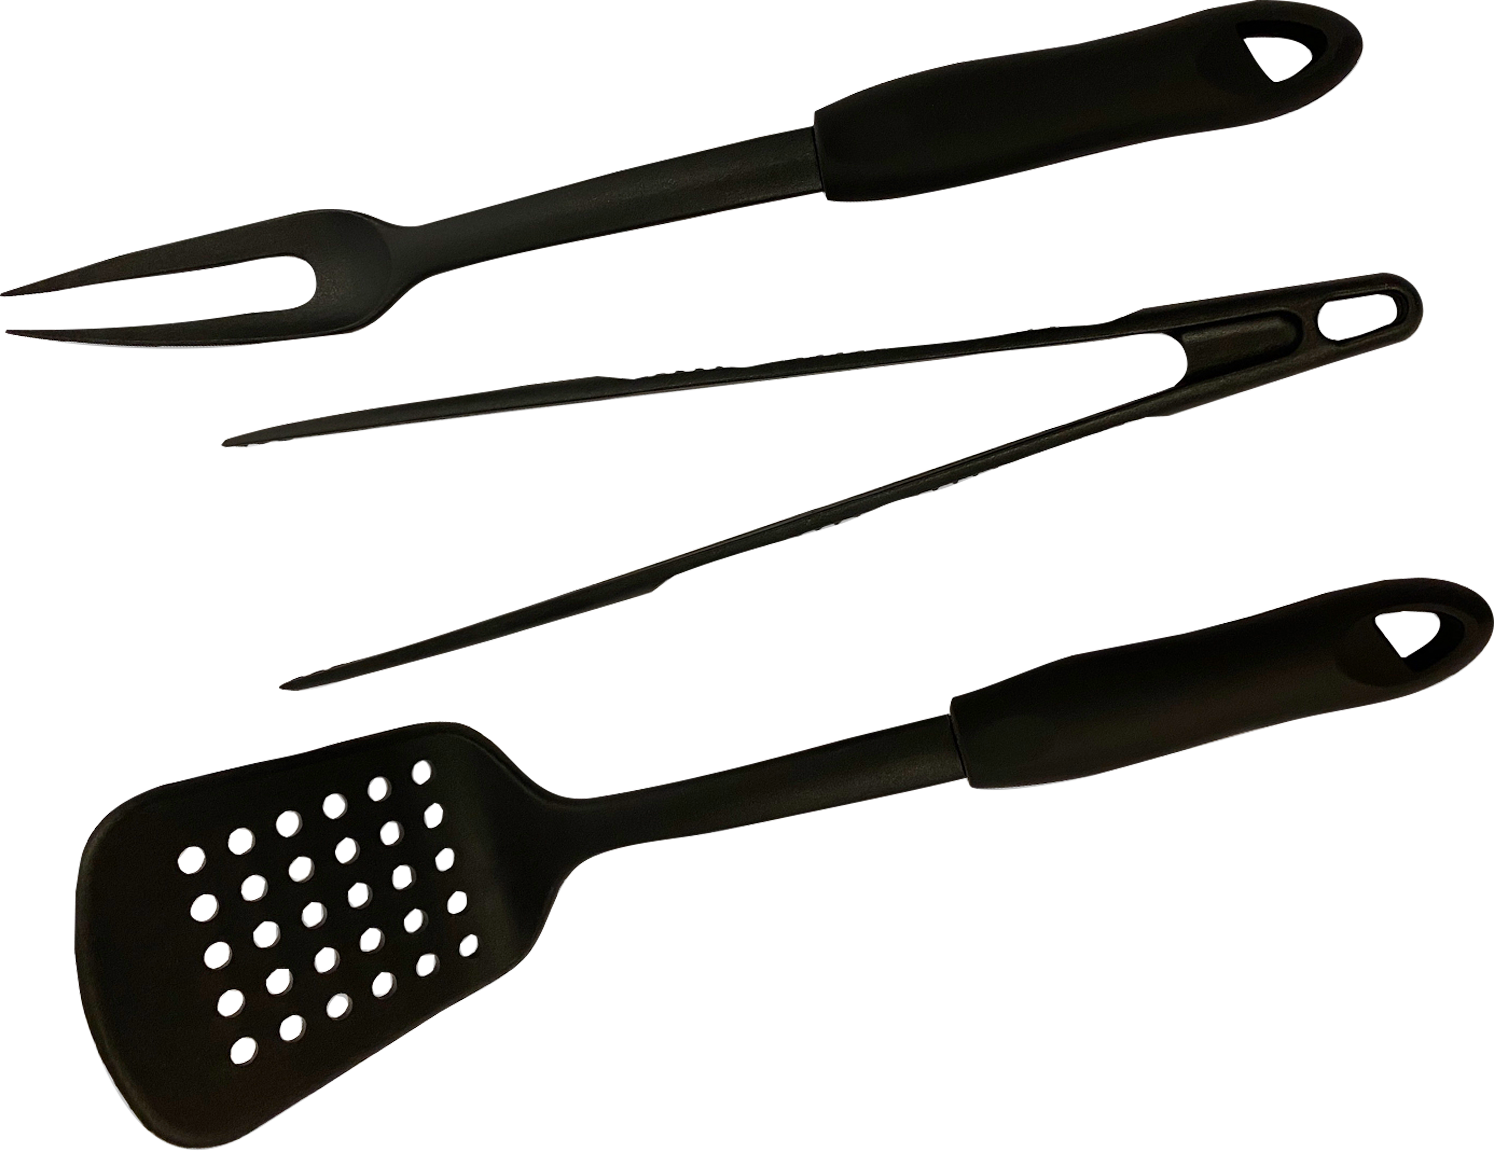 Set de 2 ustensiles pour barbecue spatule et pince - Oxo